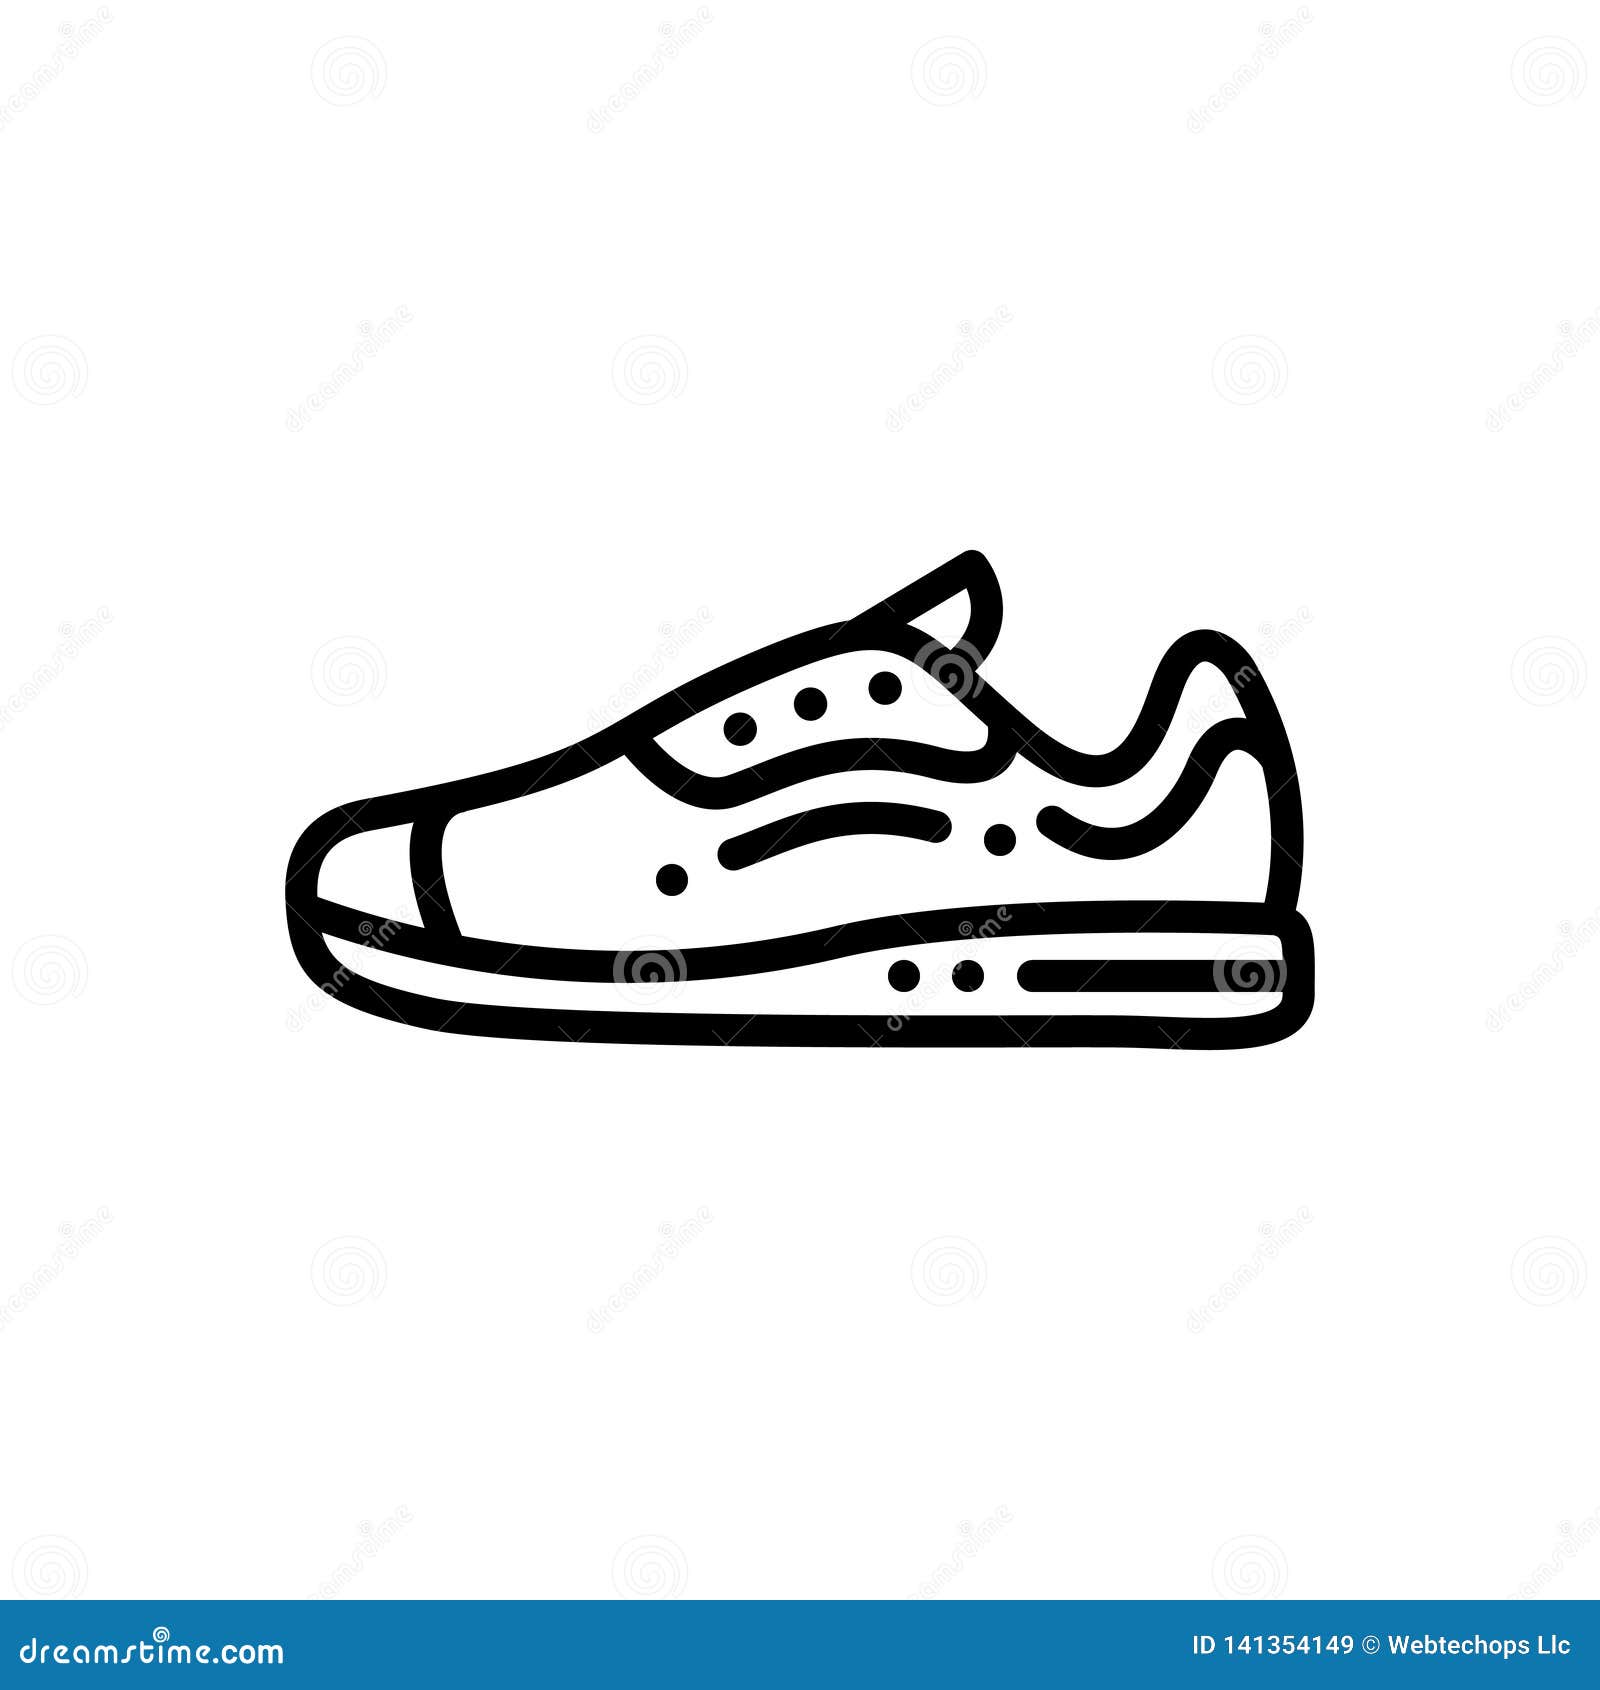 Negra Icono Para Las Zapatillas De Deporte, Los Zapatos Y Activar Stock de ilustración - Ilustración manera, trotar: 141354149